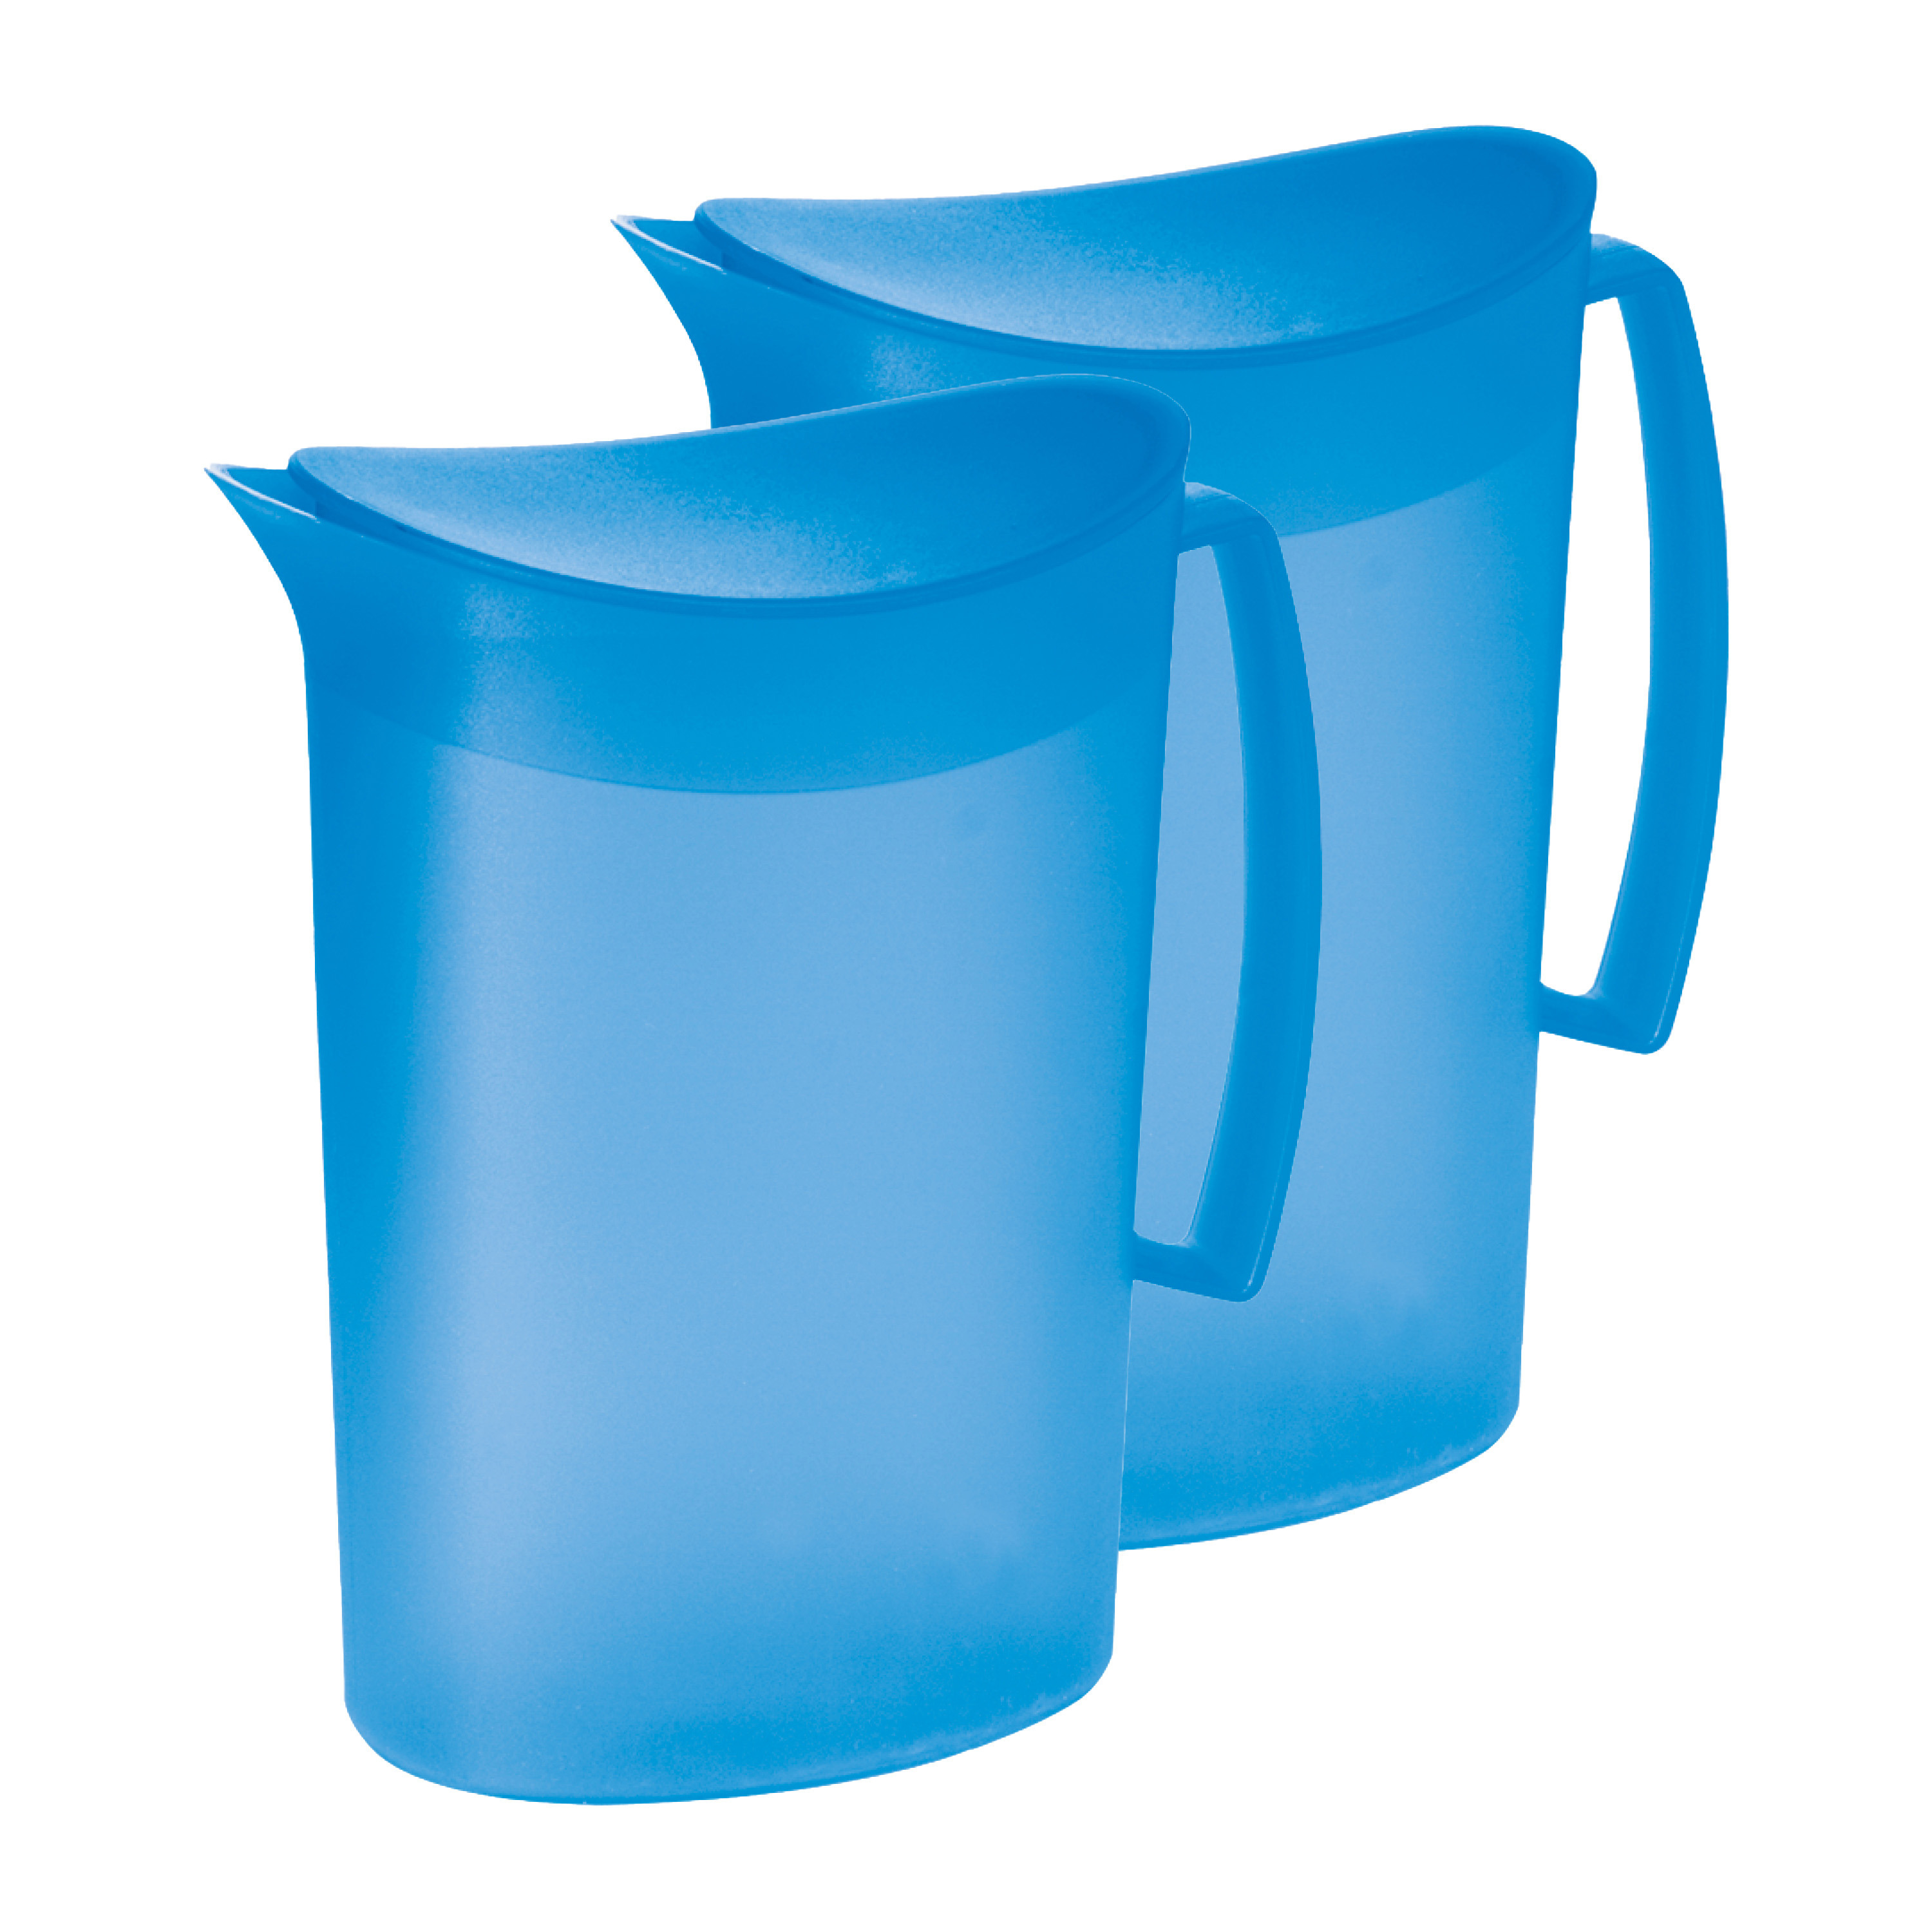 Juypal Hogar Schenkkan/waterkan met deksel - 2x - blauw - 2 liter - kunststof - L20 x H23 cm -